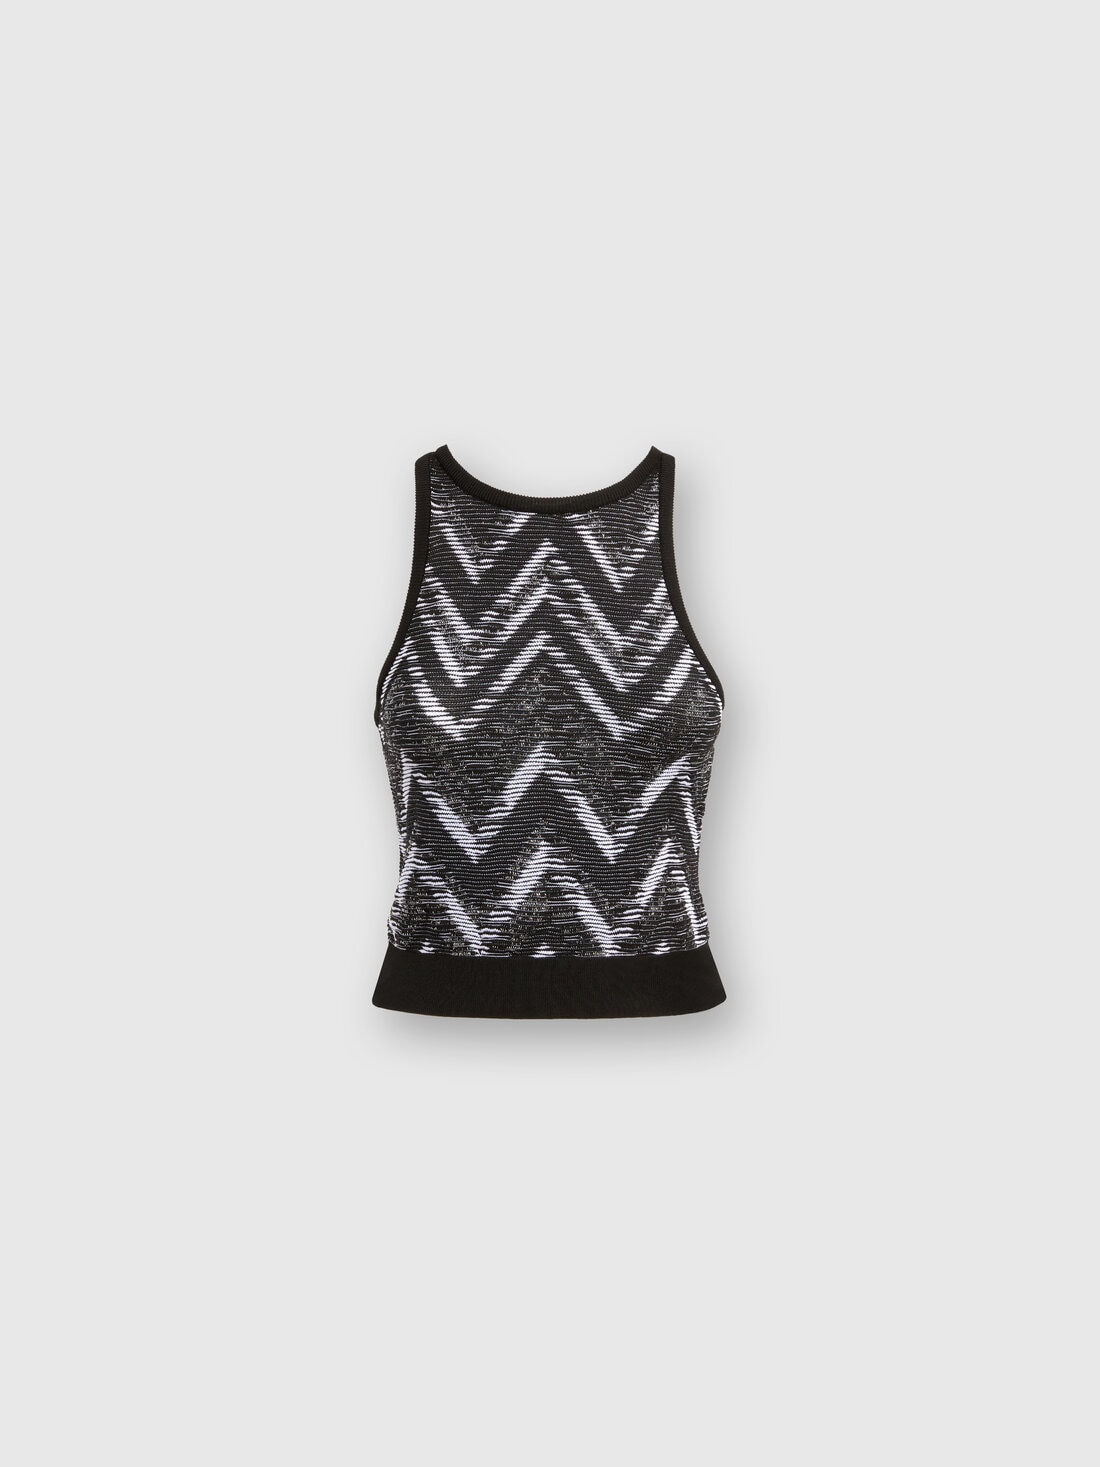 Chevron knit top with logo, Black & White - SS24SK03BK034CS91J9 - 0